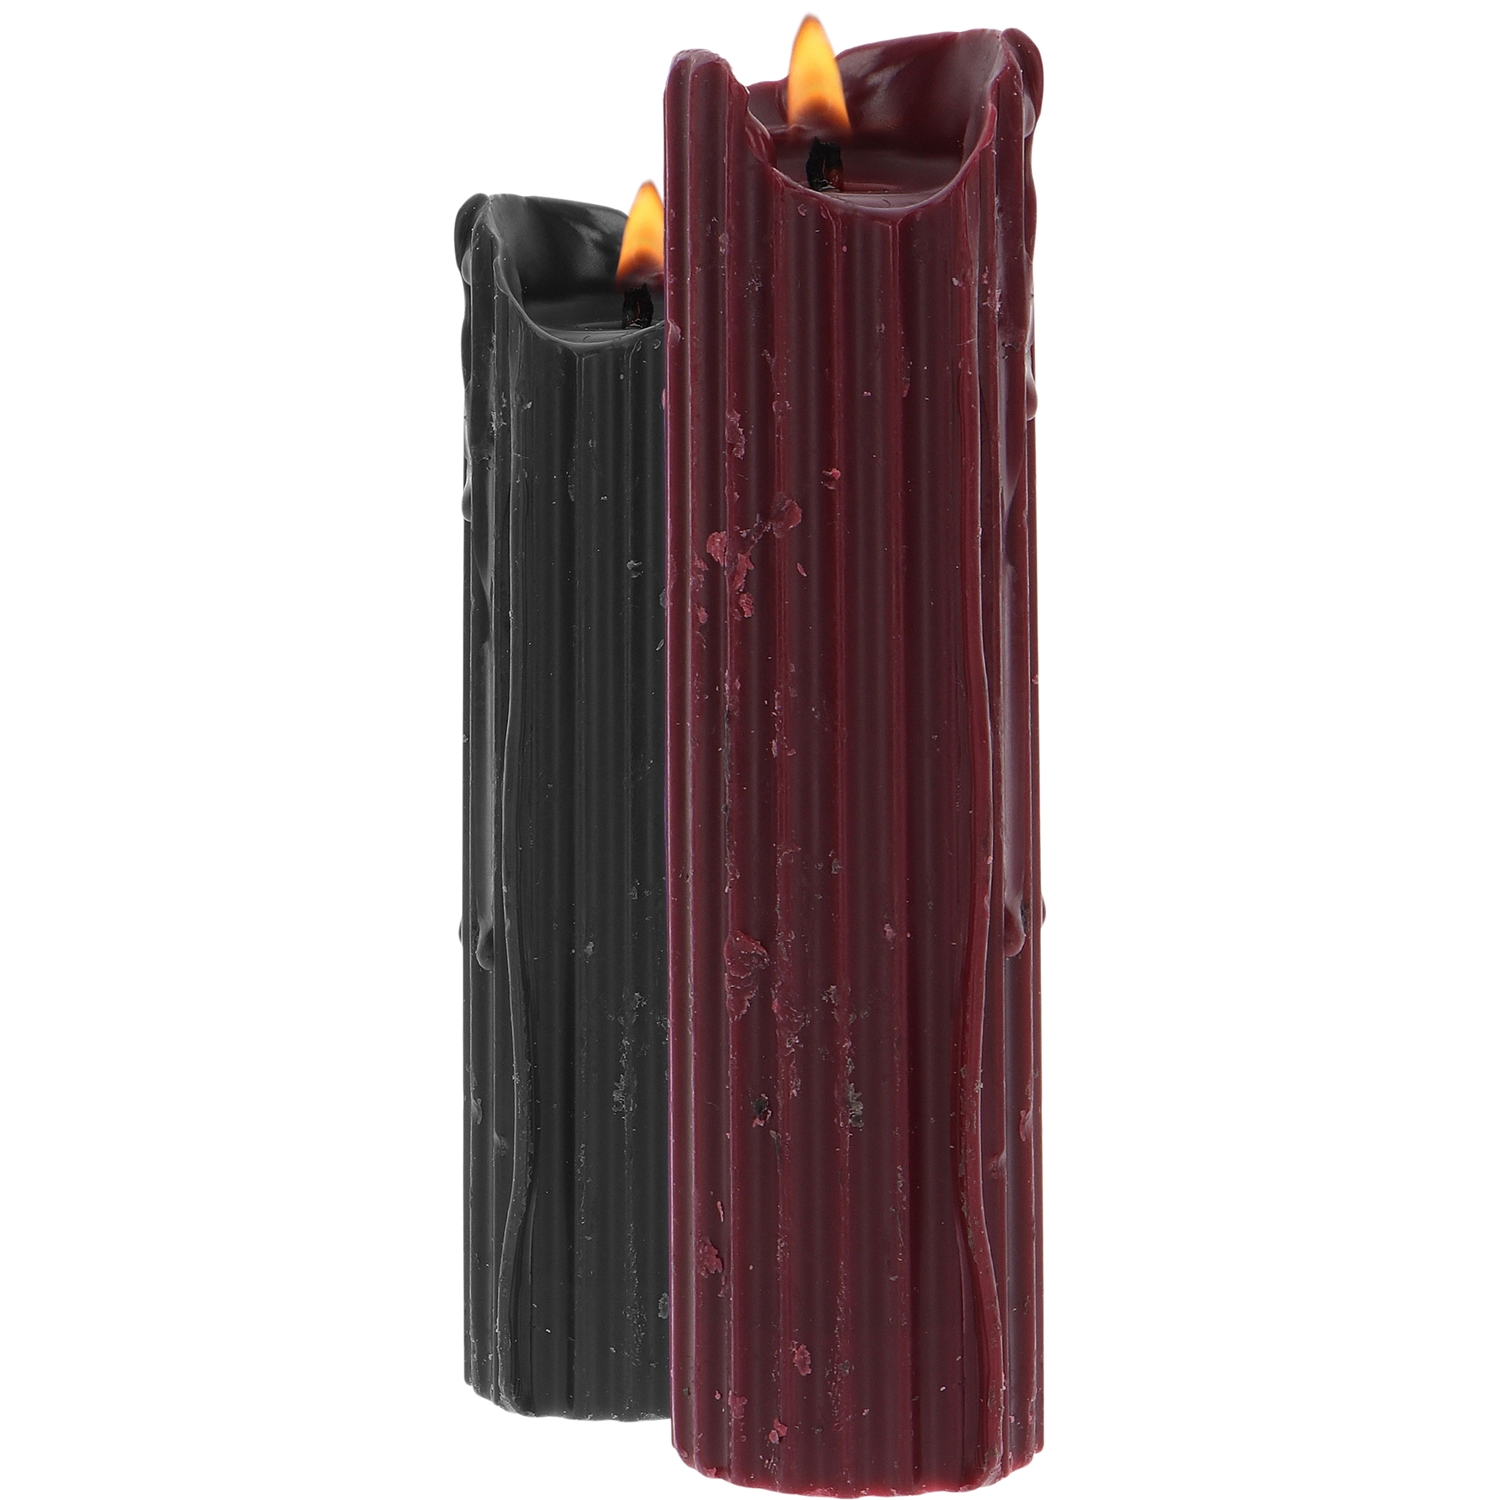 Taboom Taboom BDSM Drip Candles 2 stk - Rød